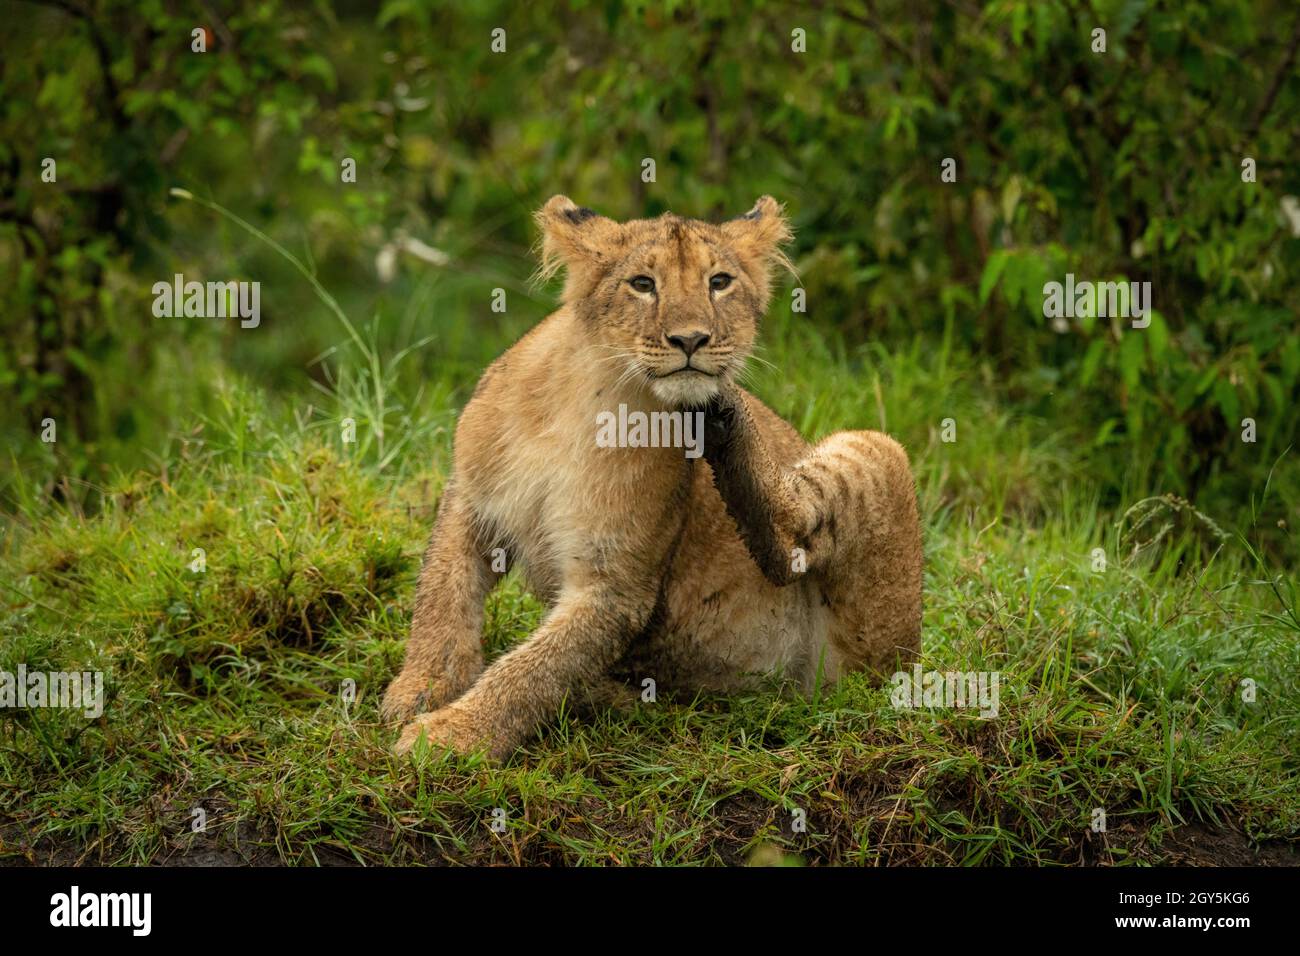 El cachorro de león se sienta en la mandíbula de rascado de hierba Foto de stock